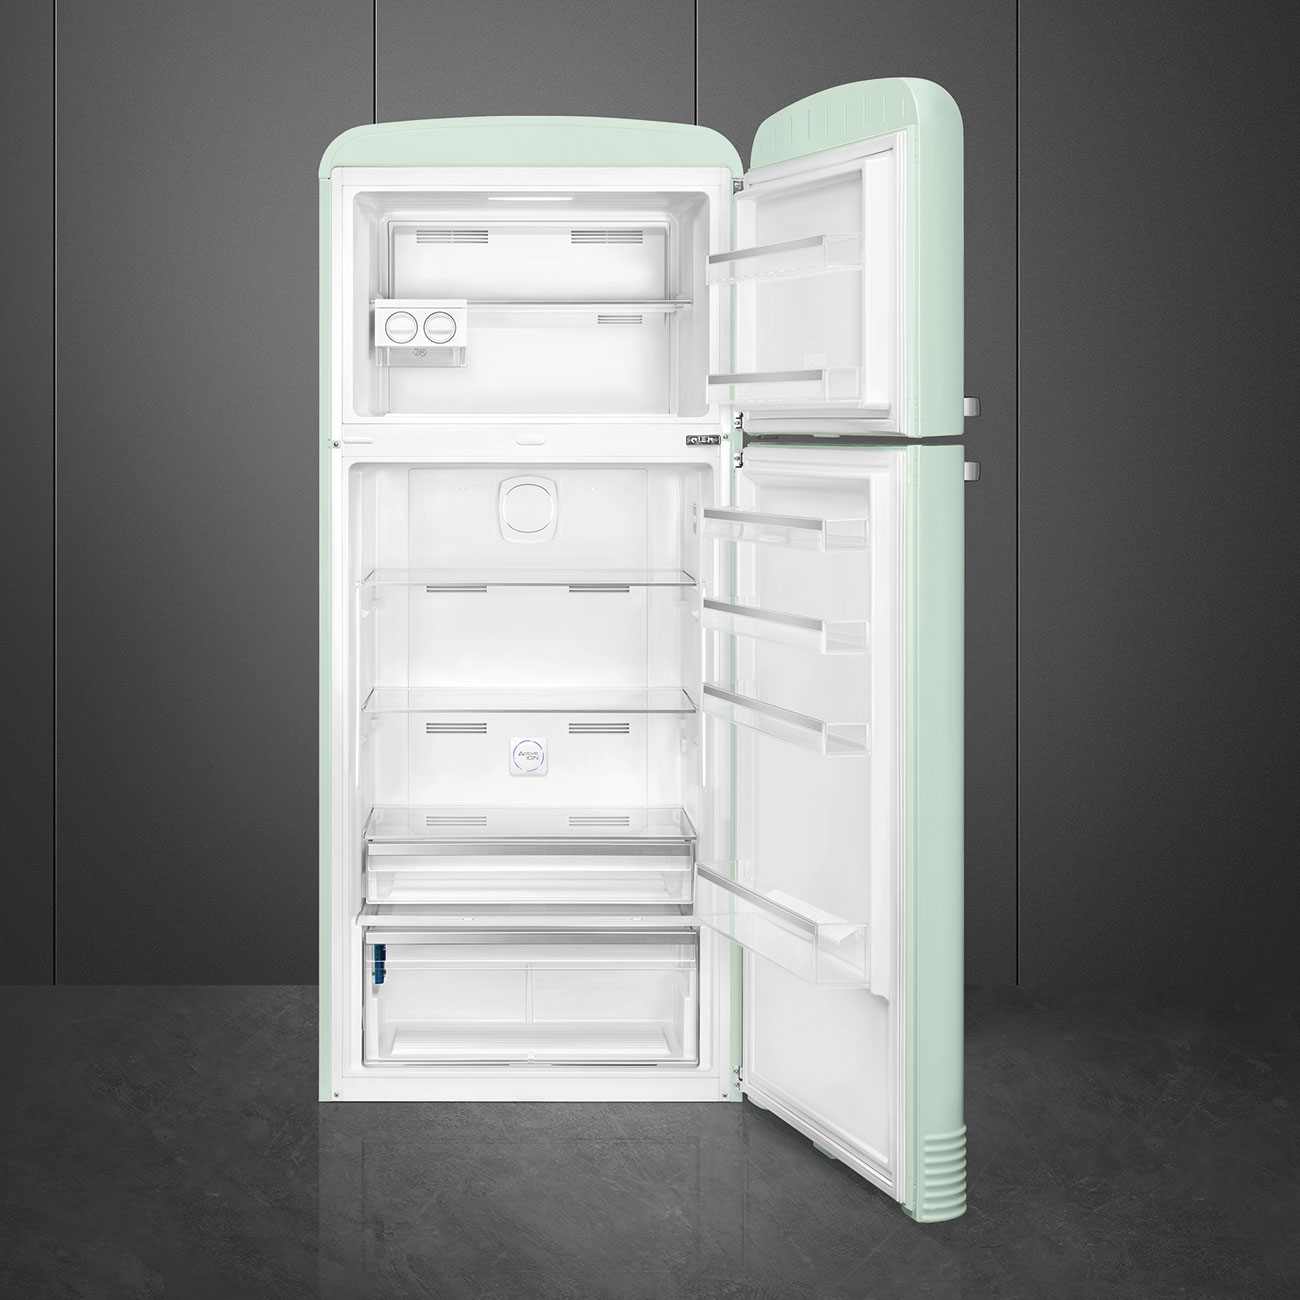 Watergroen koelkast - Smeg_2